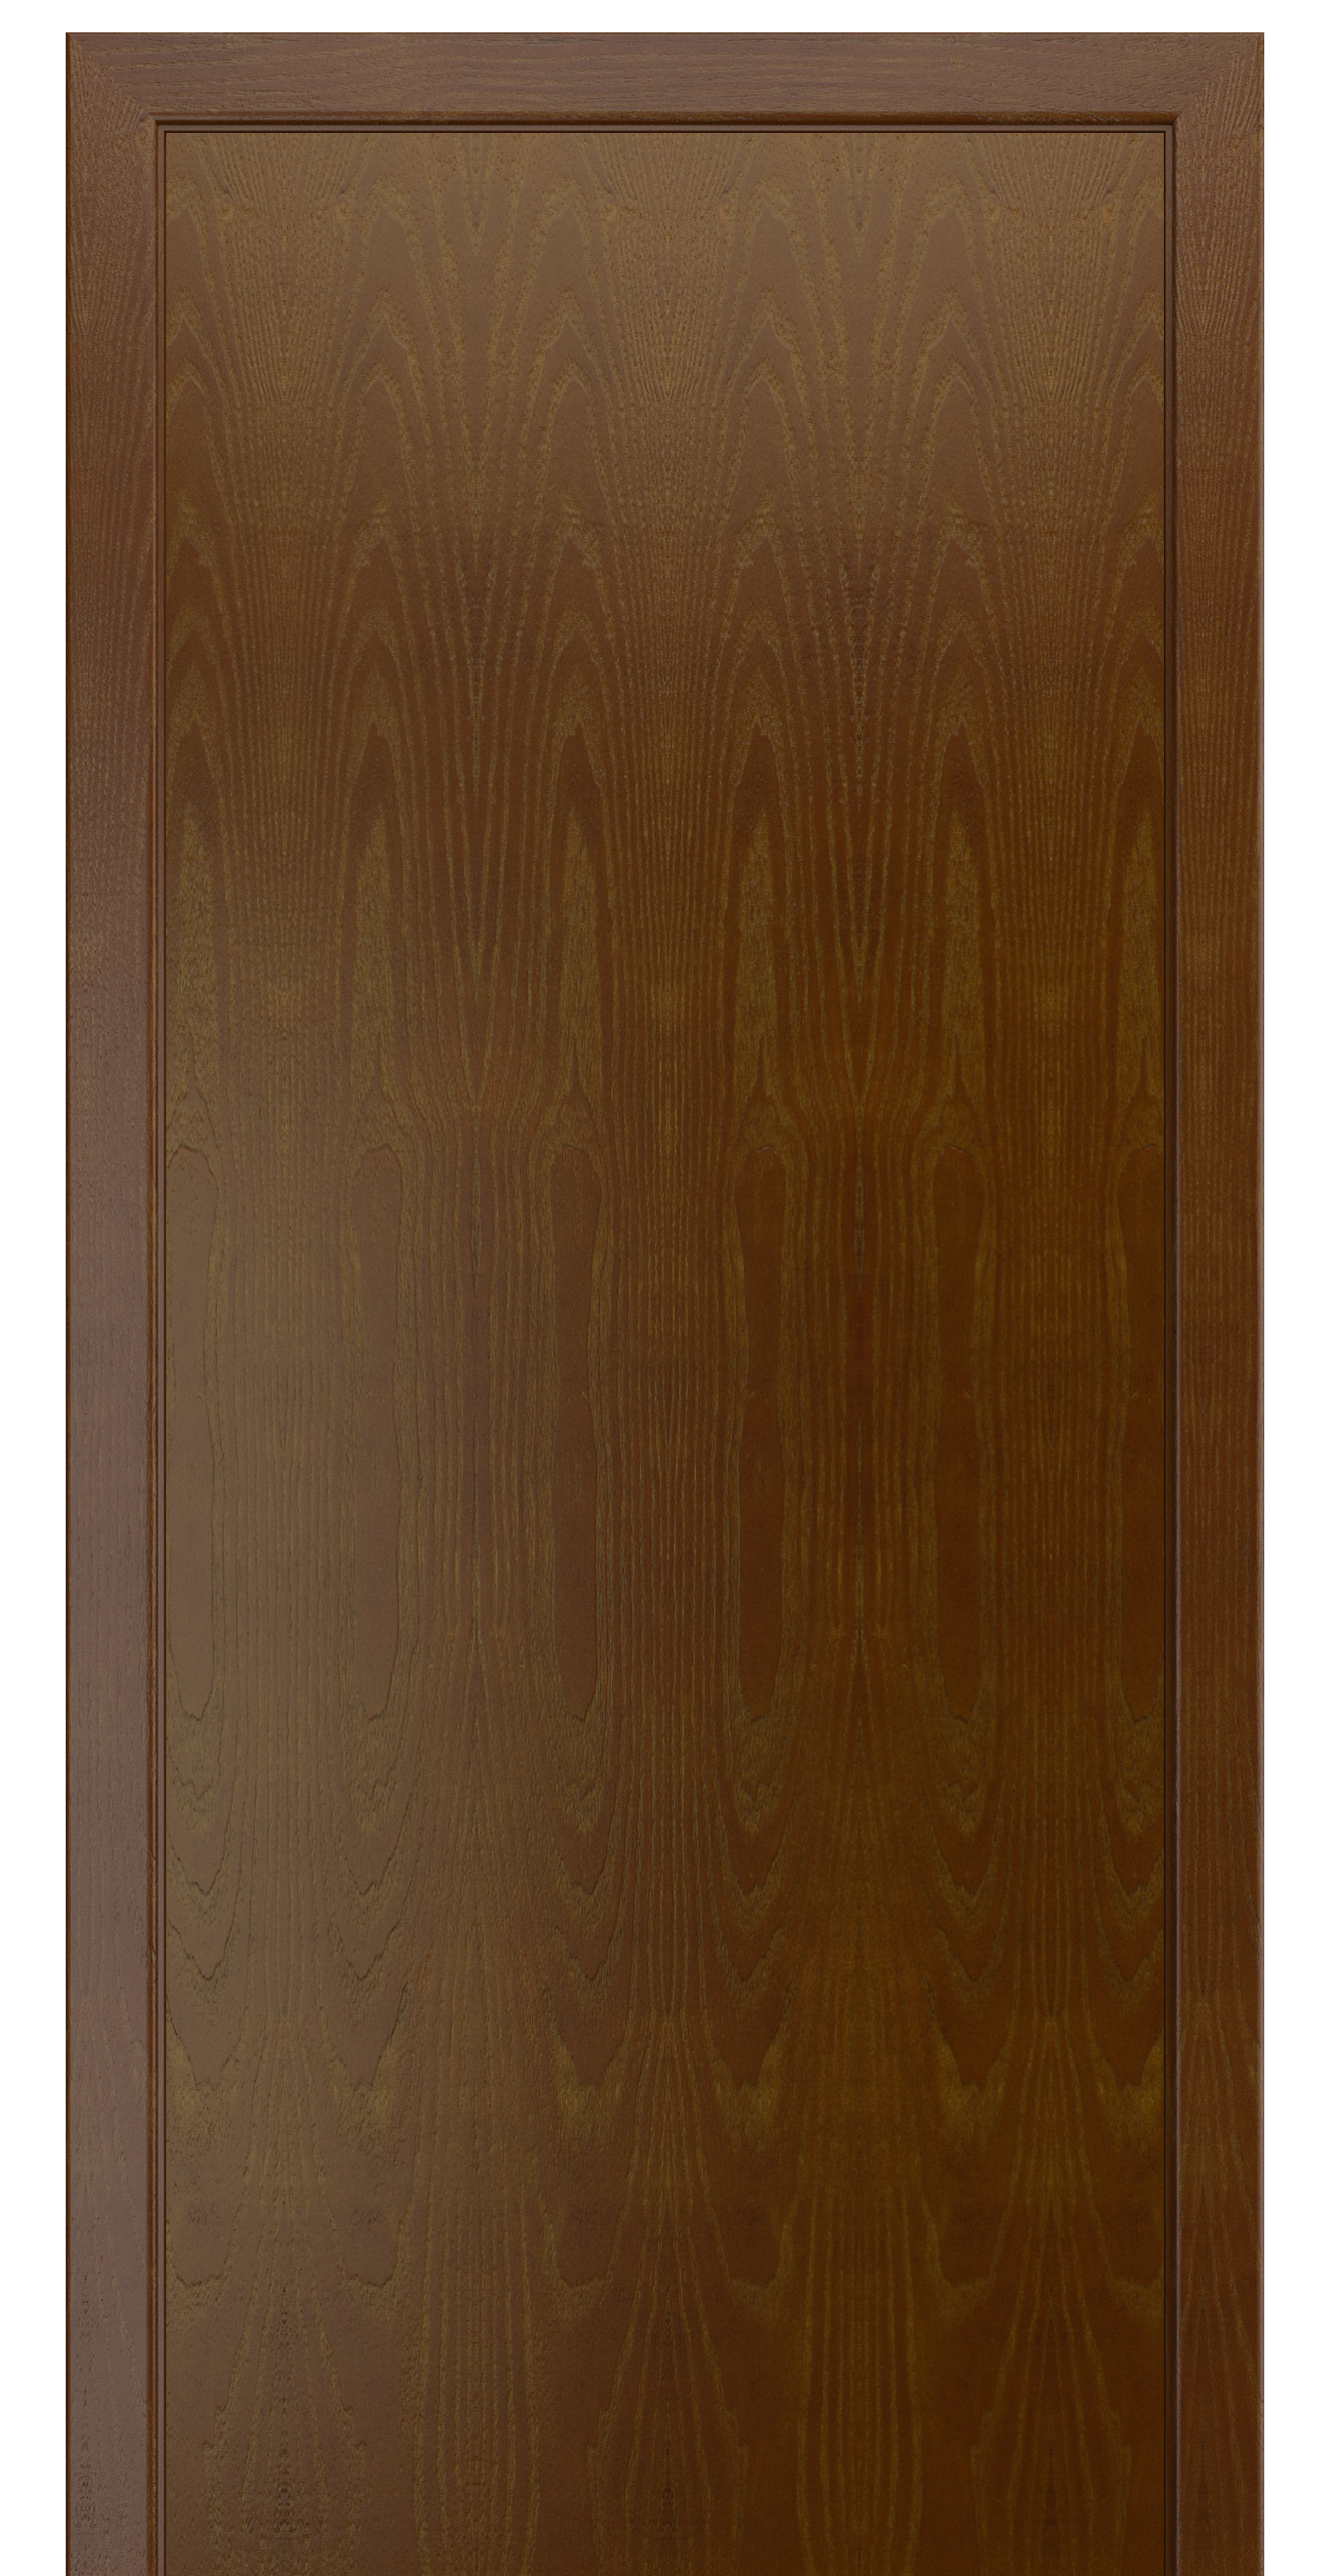 Межкомнатная дверь «Камелия К-4». Вид отделки Тон 27 Cтандартный наличник